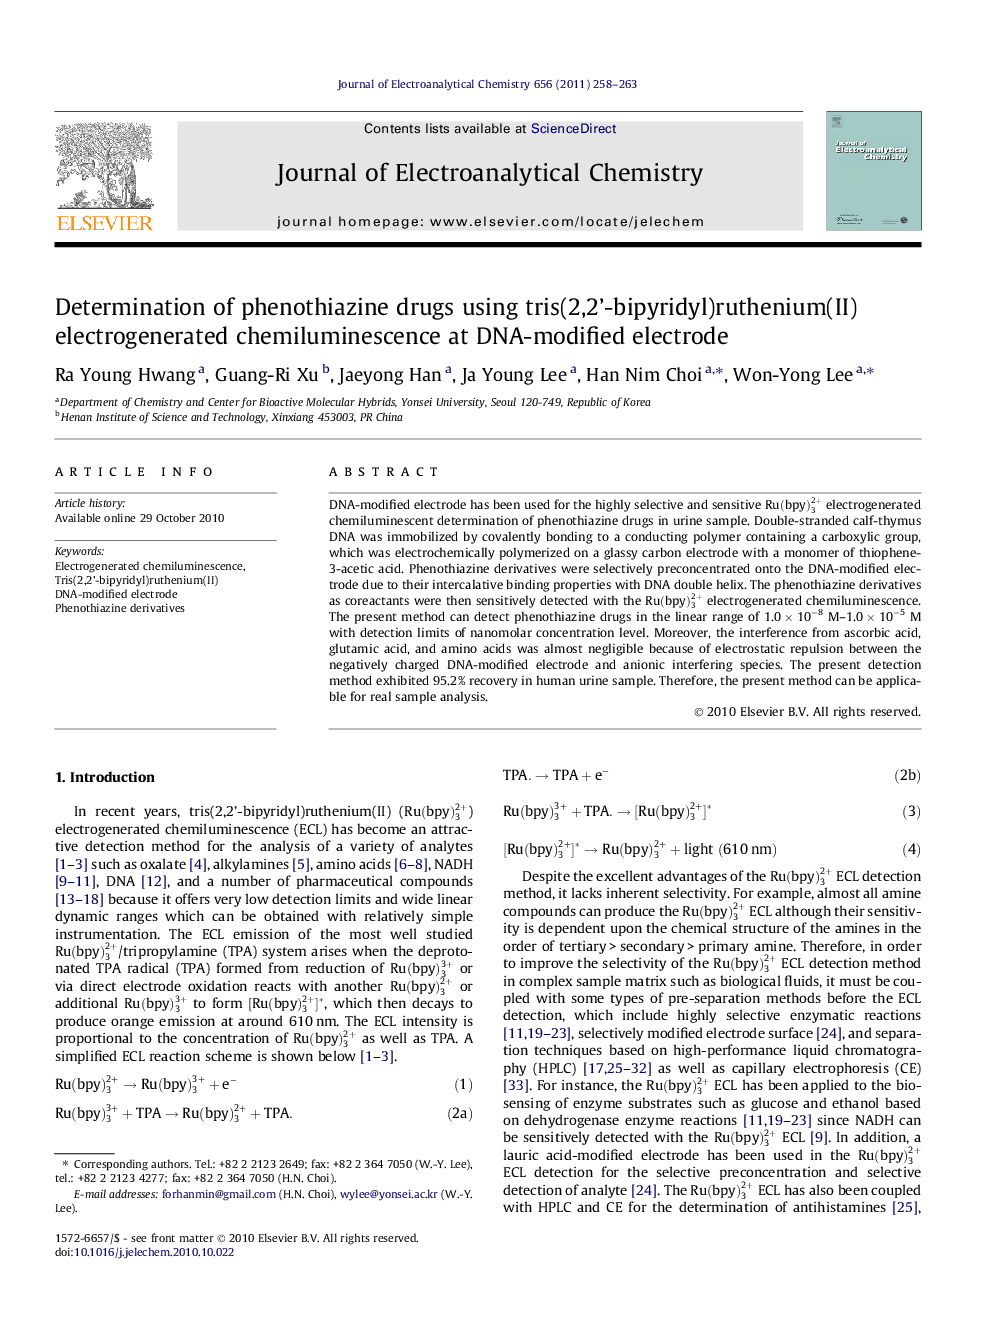 Determination of phenothiazine drugs using tris(2,2’-bipyridyl)ruthenium(II) electrogenerated chemiluminescence at DNA-modified electrode